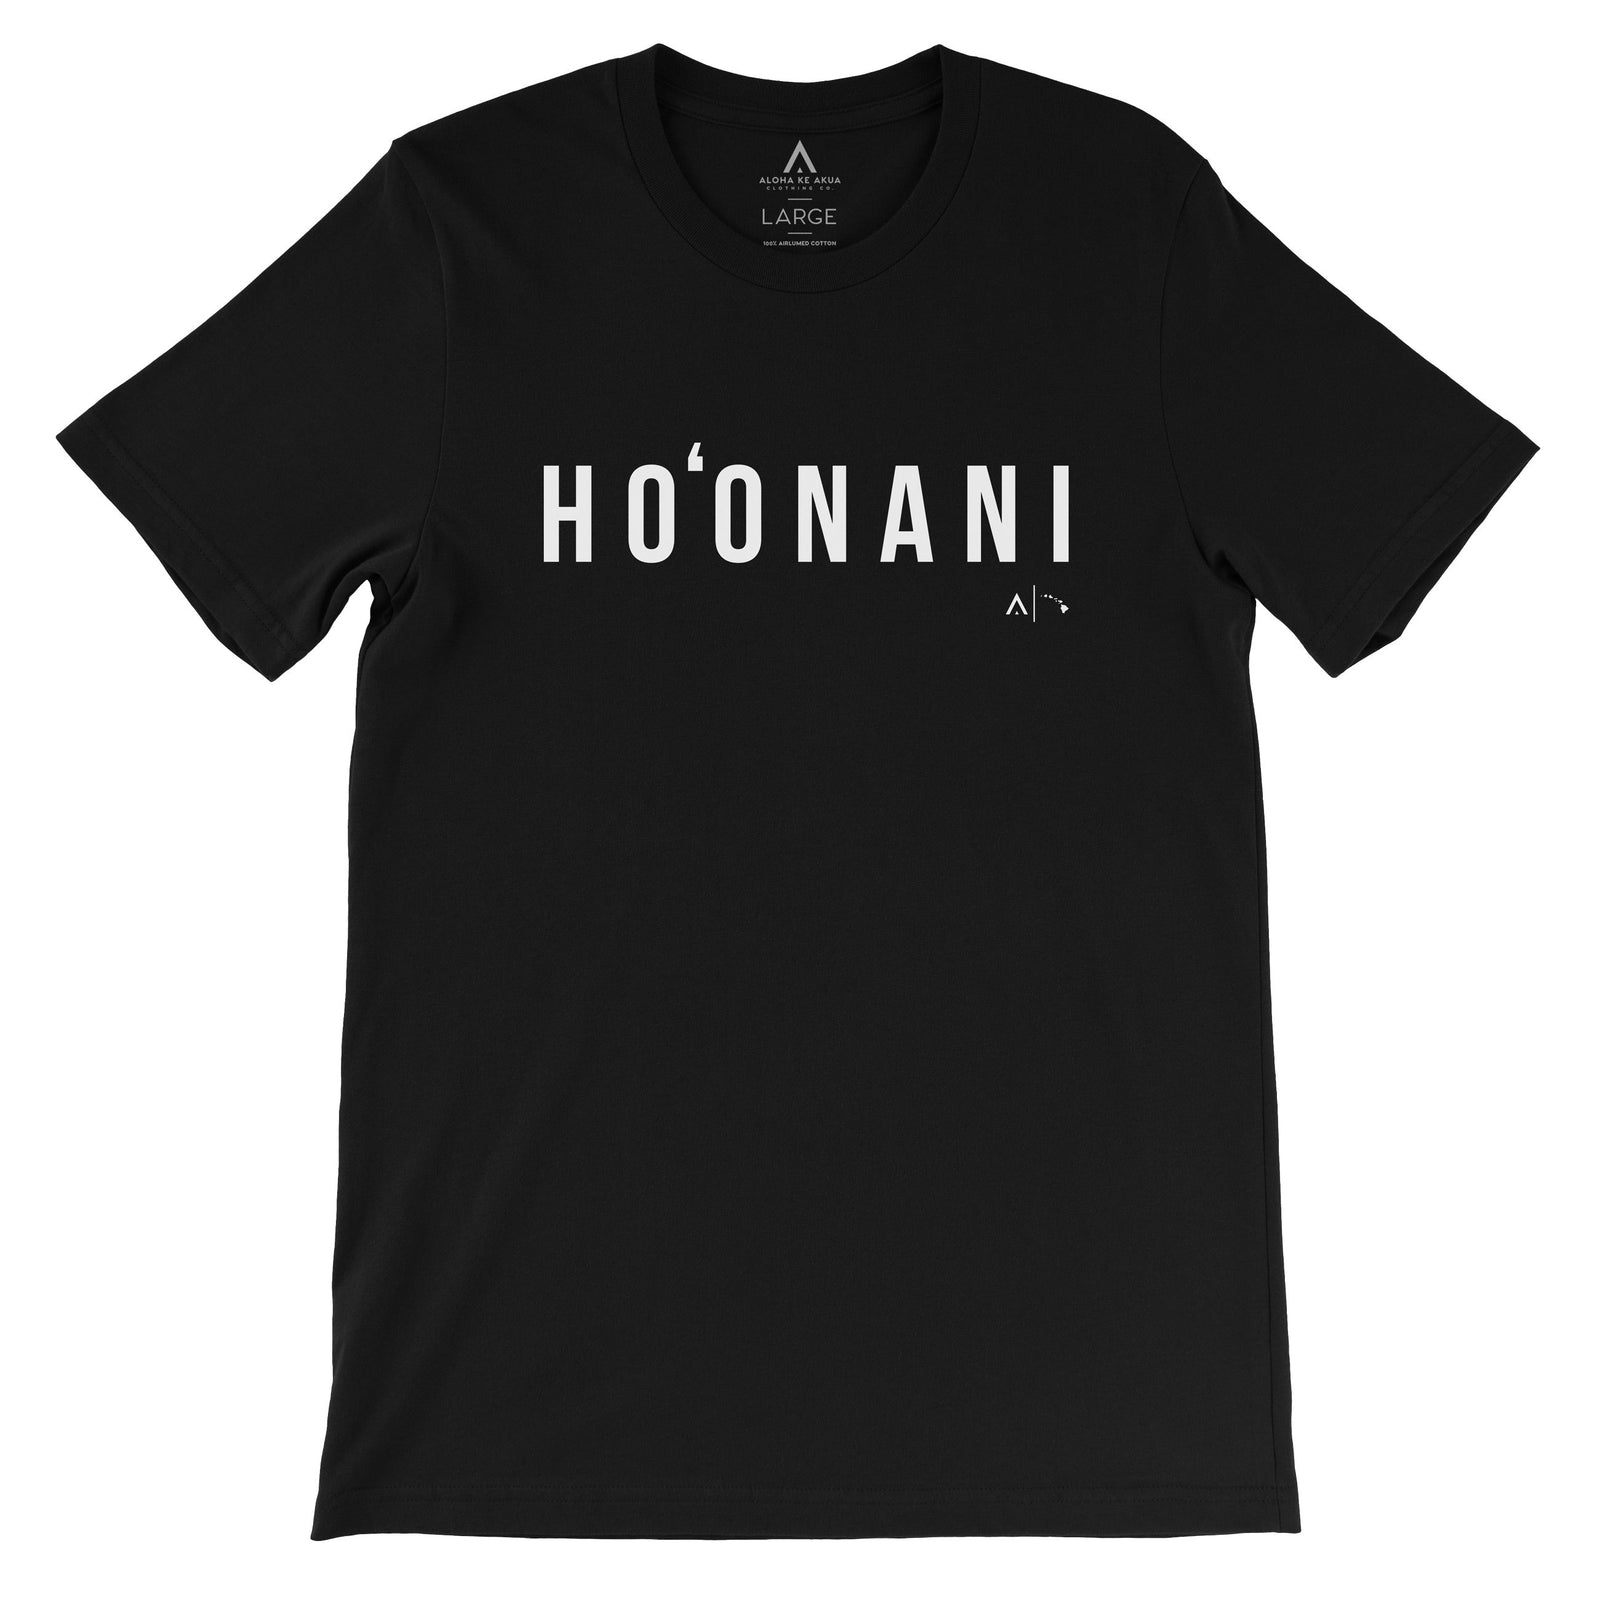 Pop-Up Mākeke - Aloha Ke Akua Clothing - Ho‘onani Men's Short Sleeve T-Shirt - Black - Front View